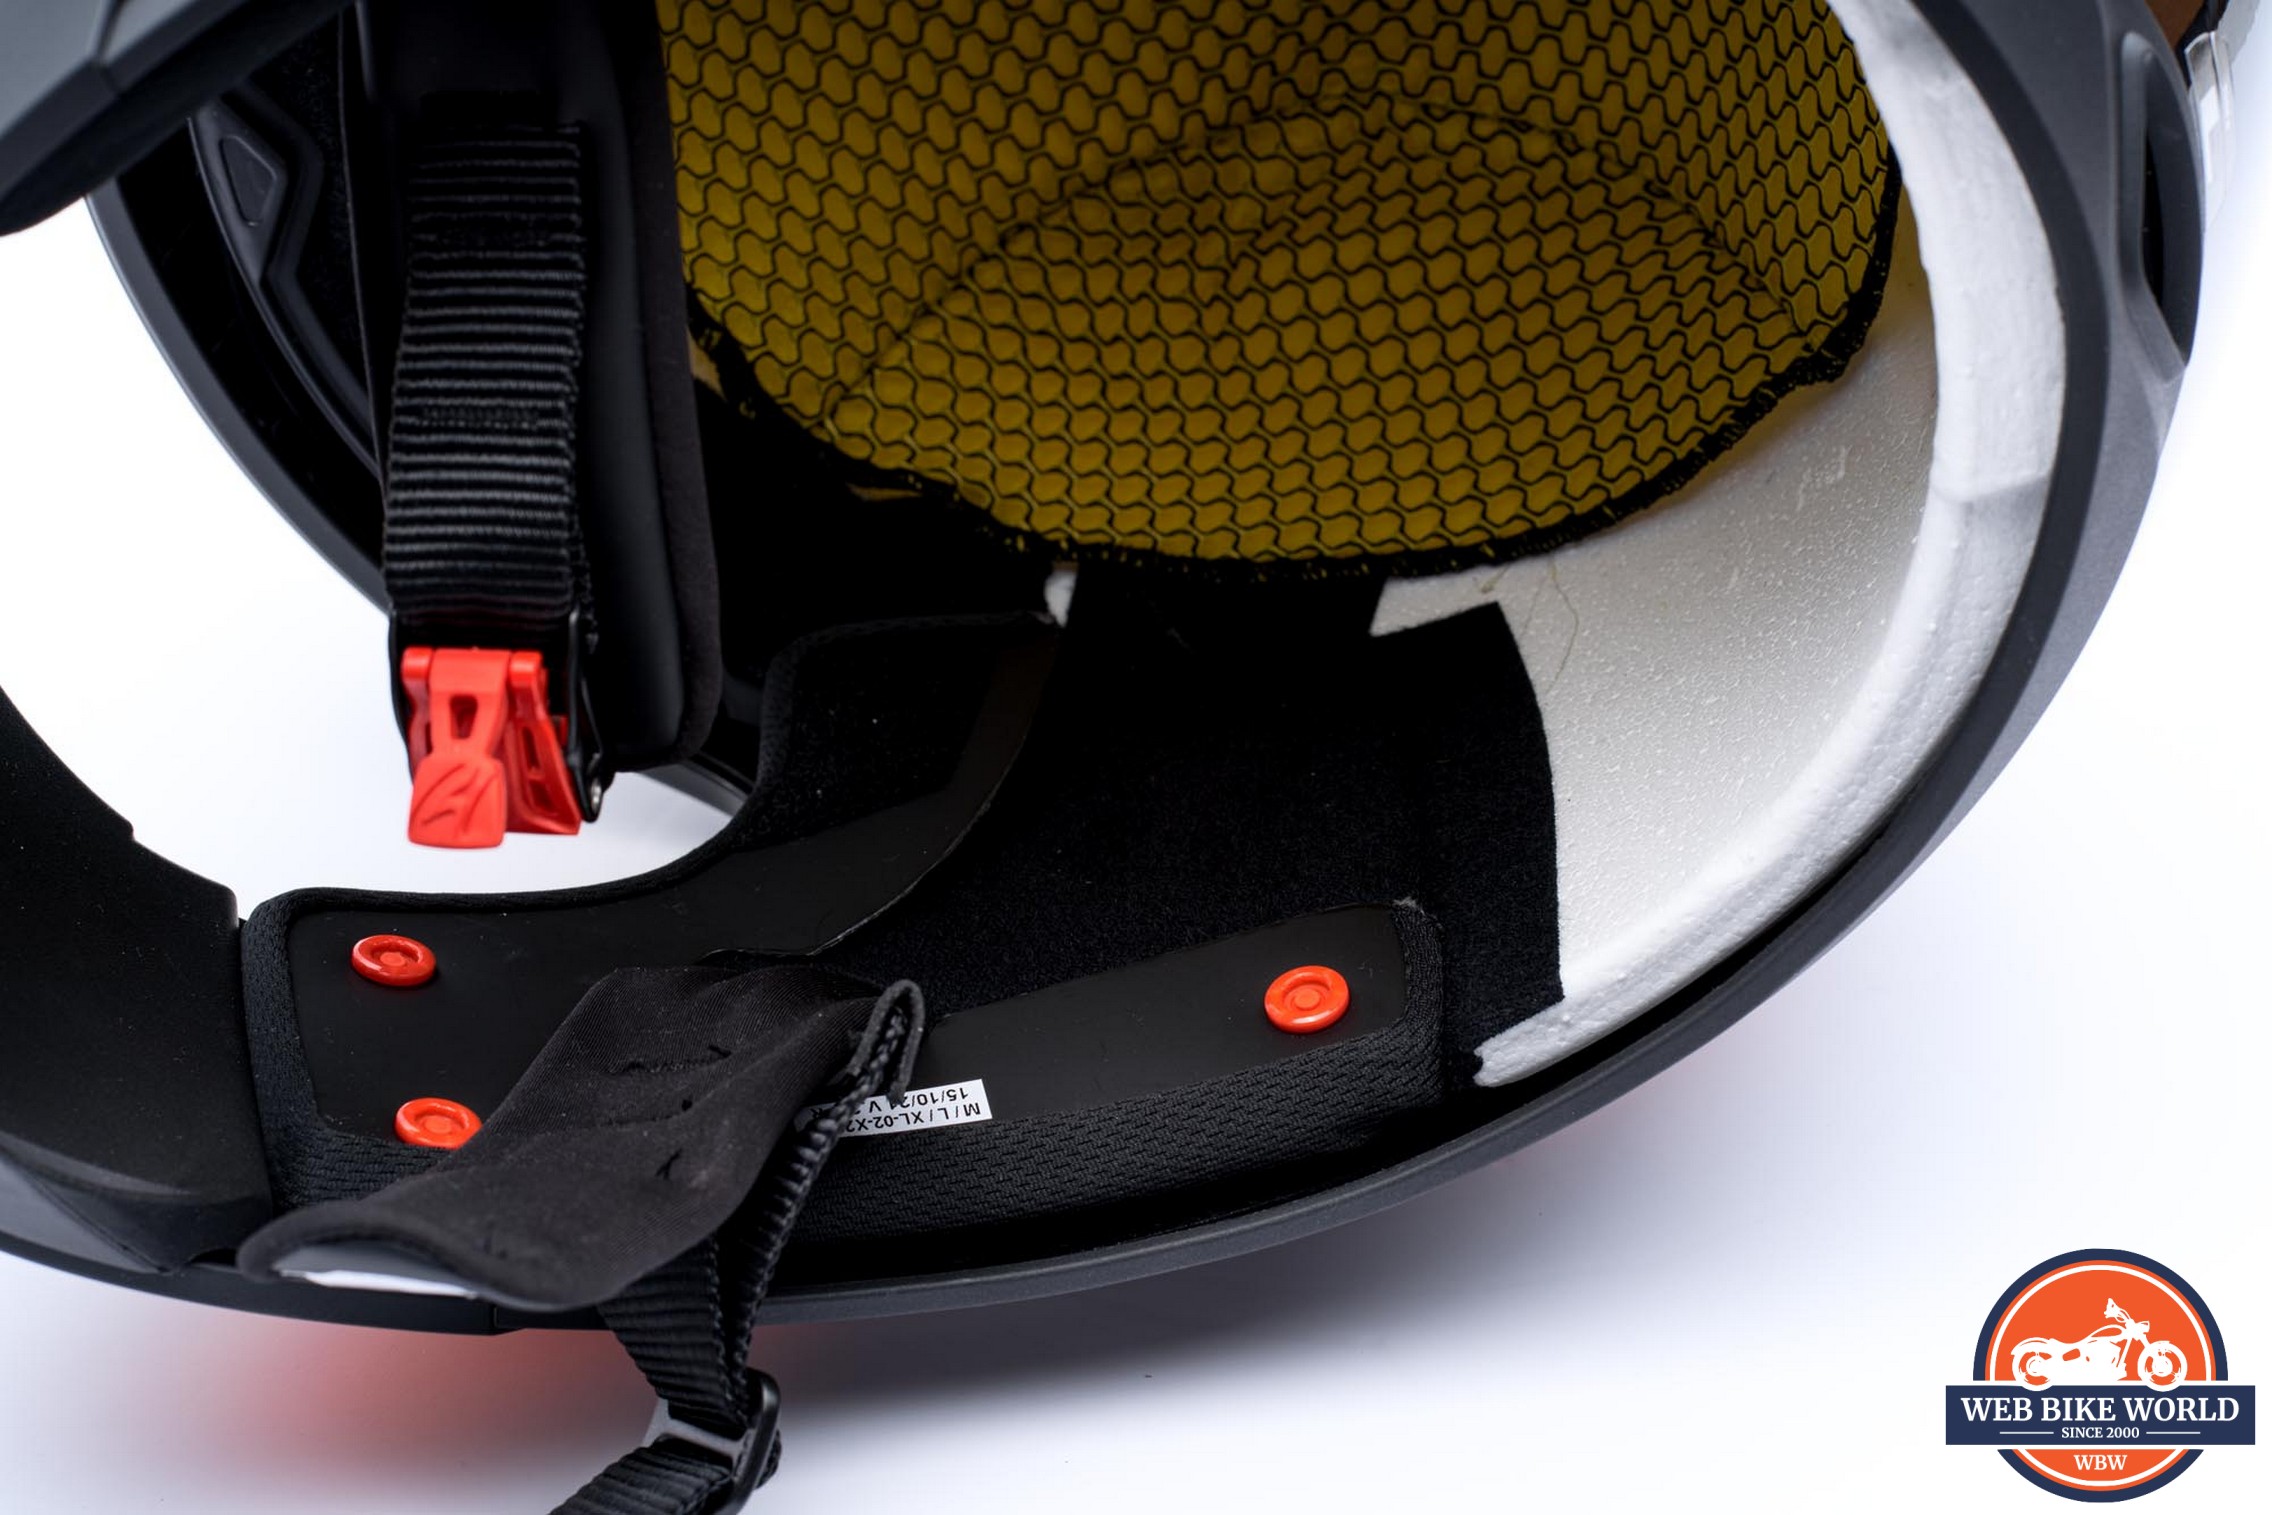 webbikeworld.com] - Shark Ridill 1.2 Full Face Helmet Review